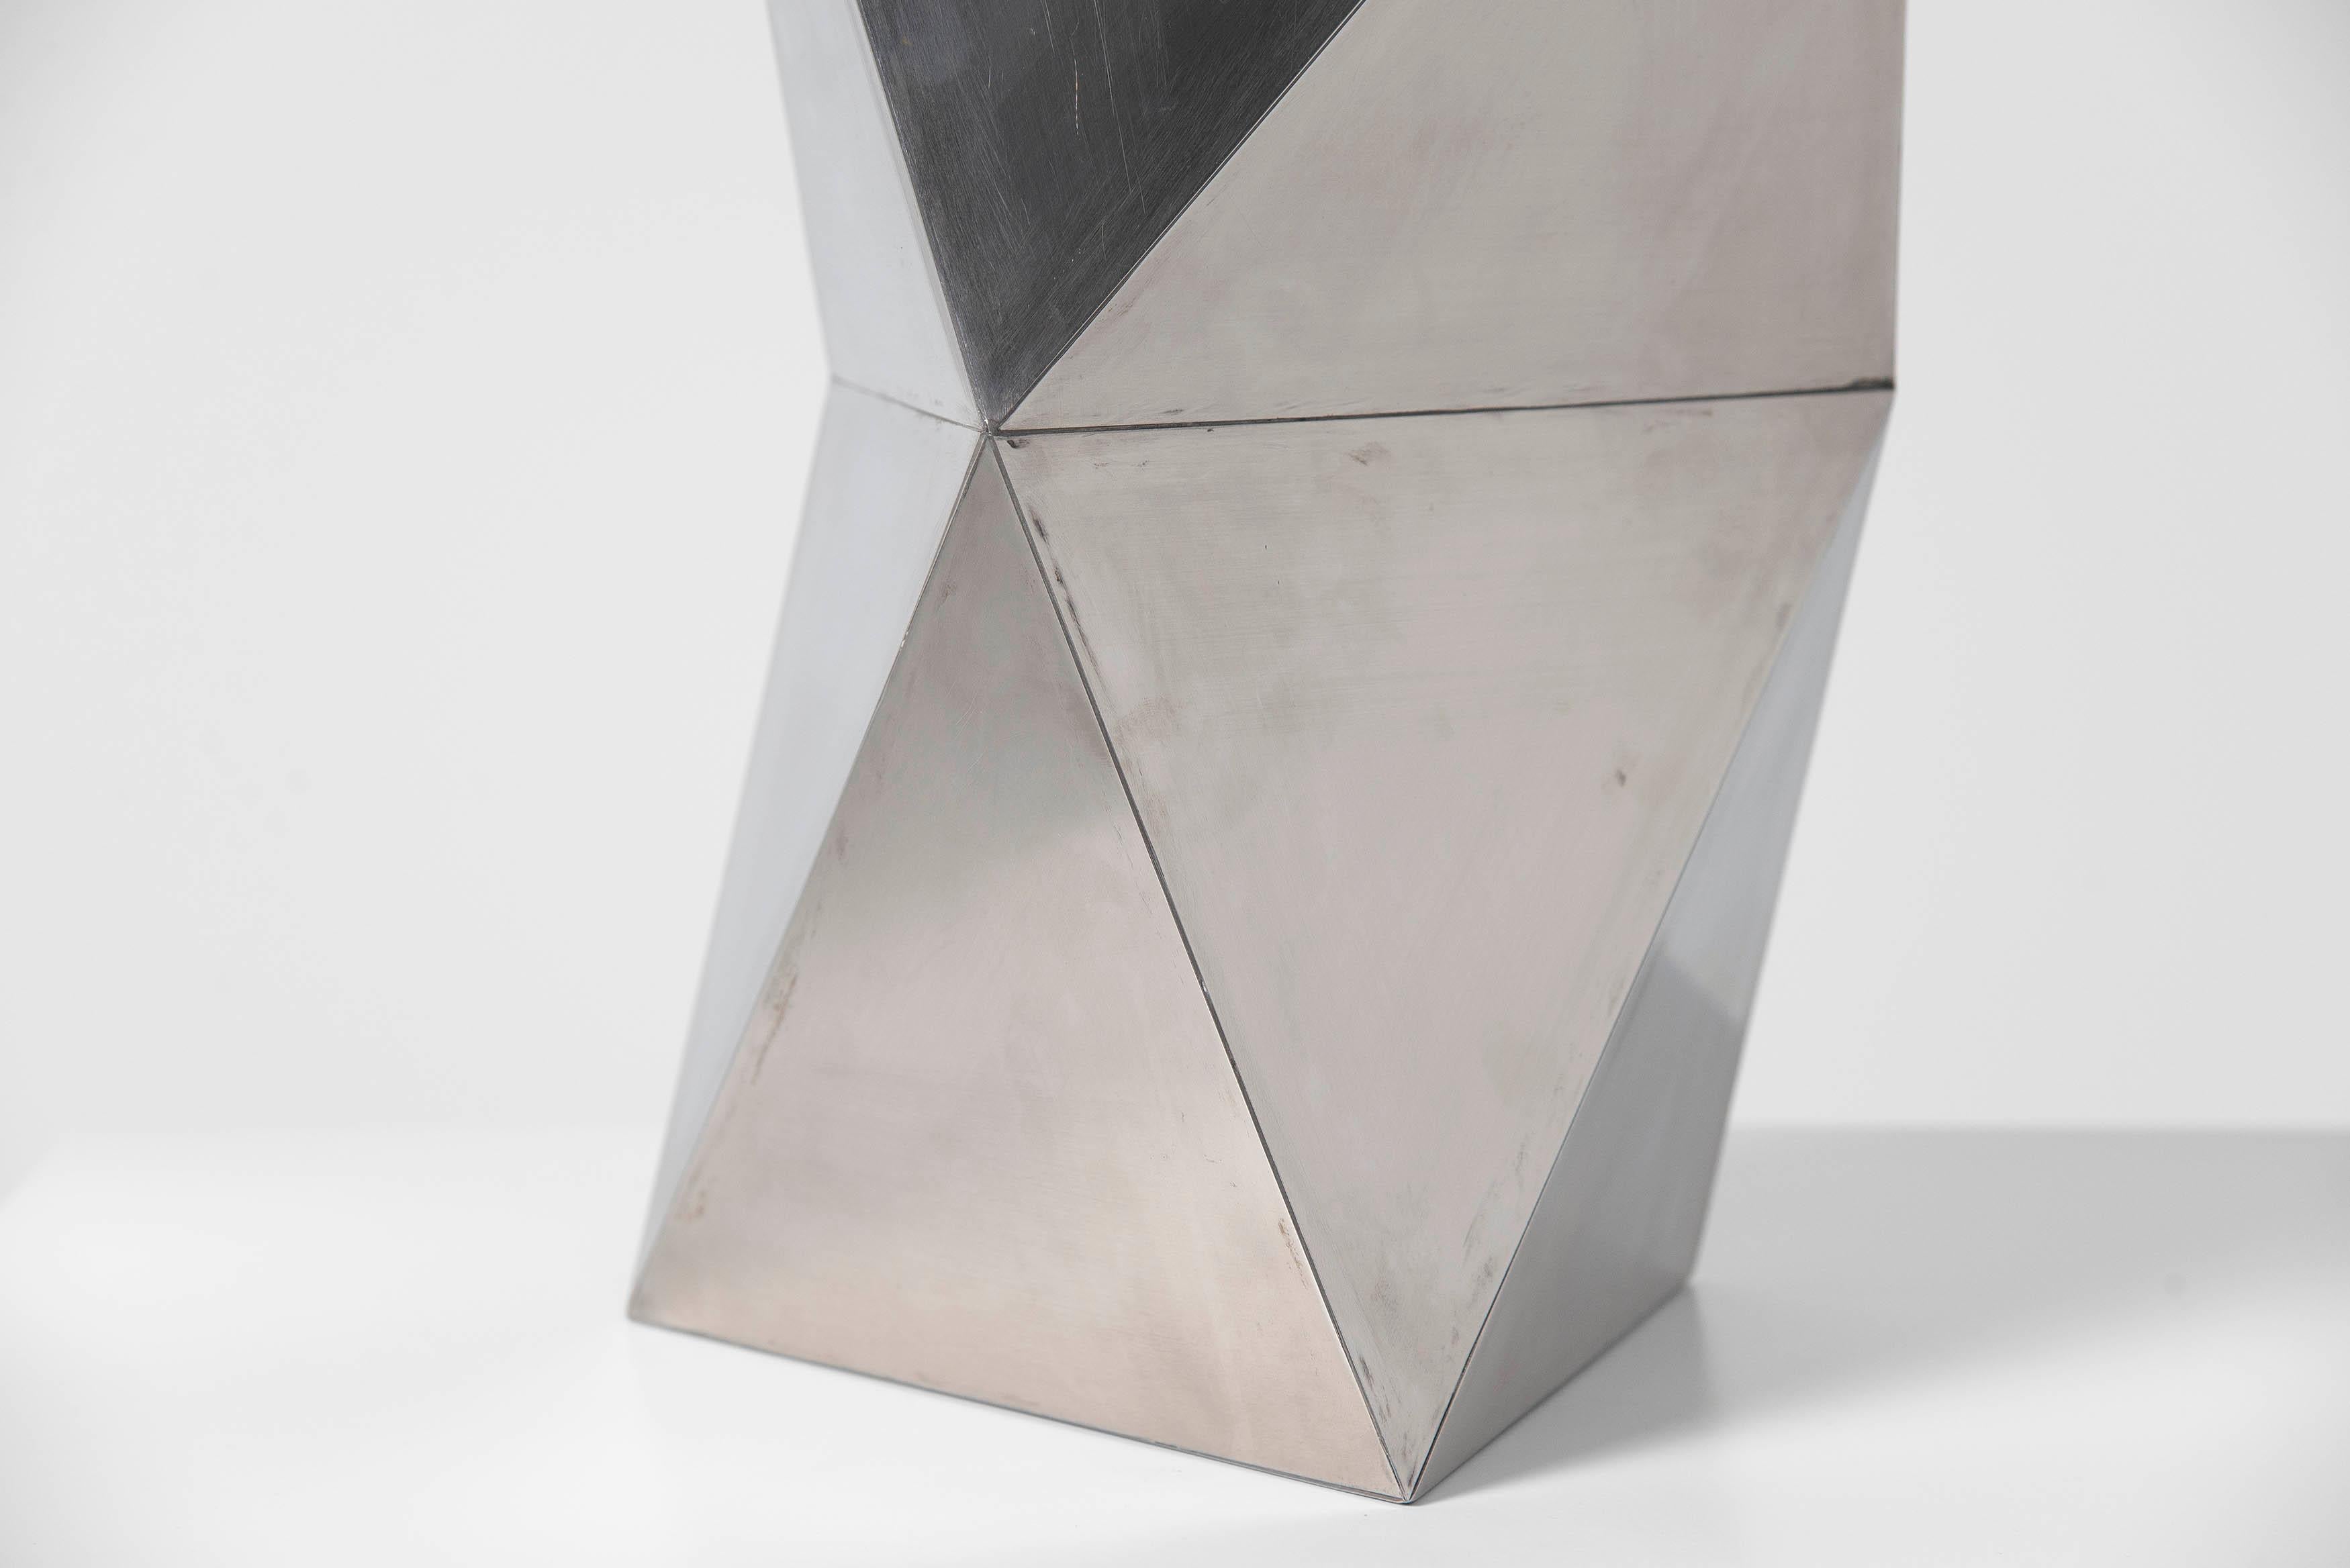 Très belle sculpture géométrique abstraite en acier inoxydable conçue par Rudolf Wolf et fabriquée dans son propre atelier en 1981. Cette sculpture est l'une des nombreuses que nous avons acquises auprès de l'ancien libraire de Rudolf Wold, qui a